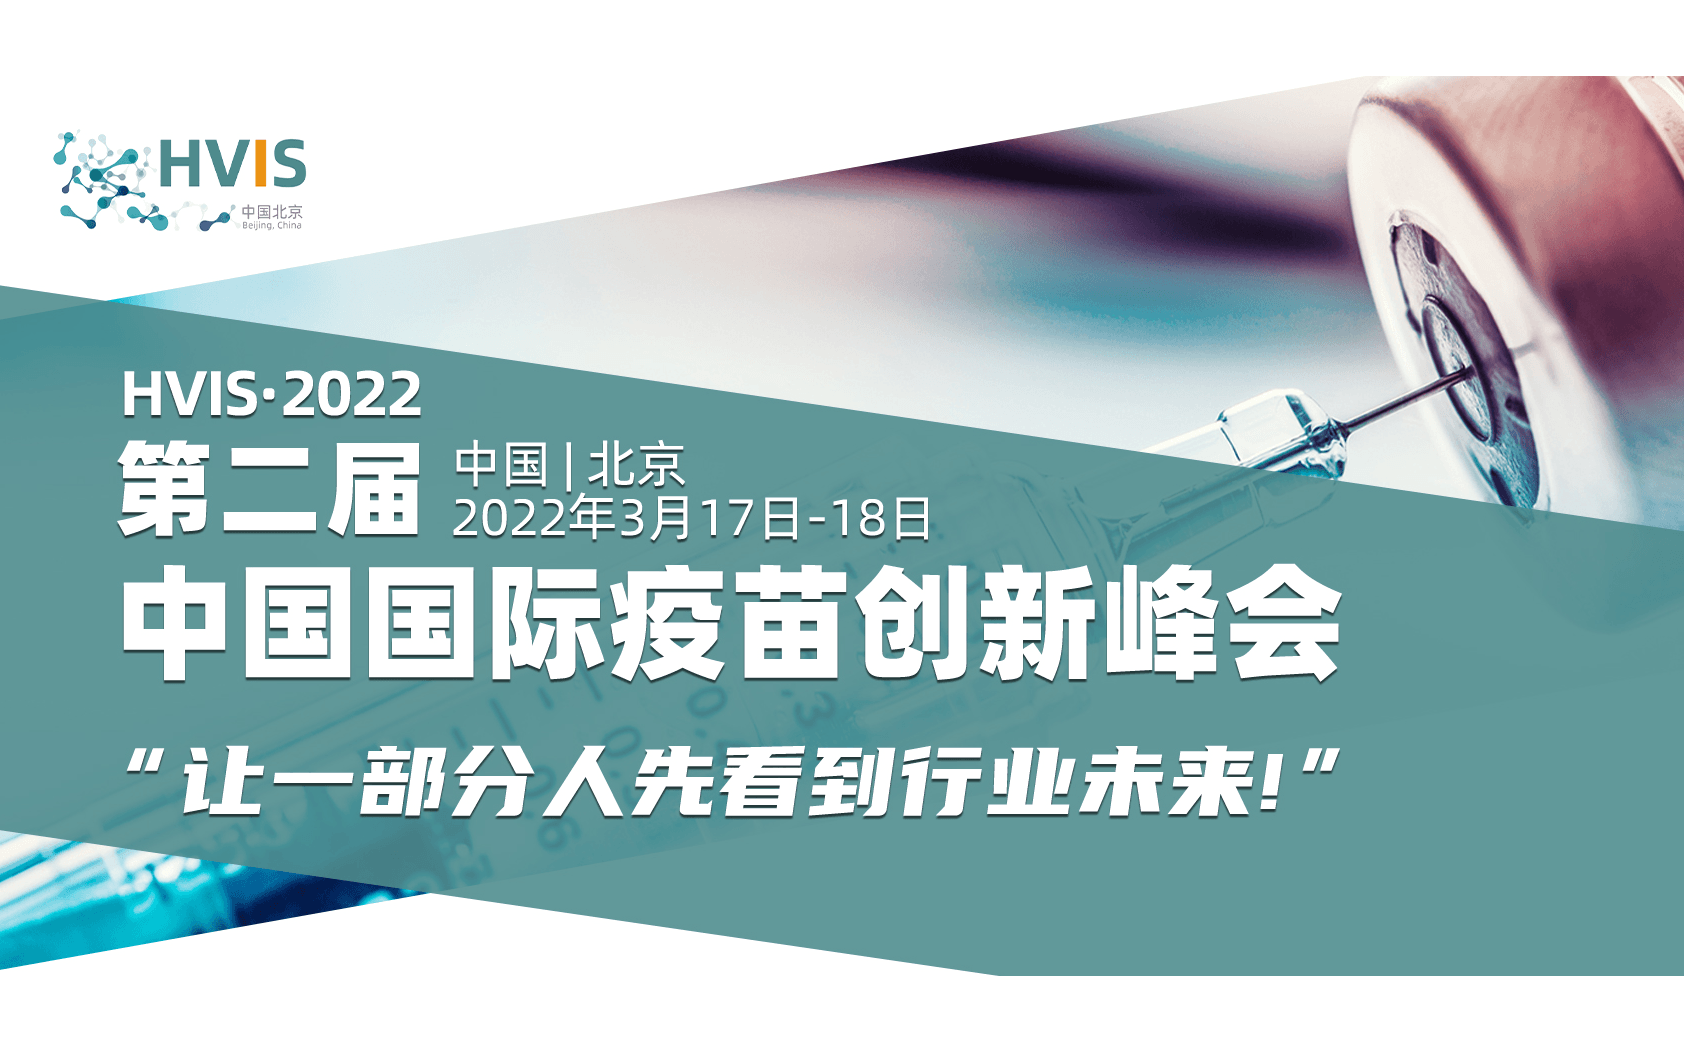 2022中国国际疫苗创新峰会(HVIS)